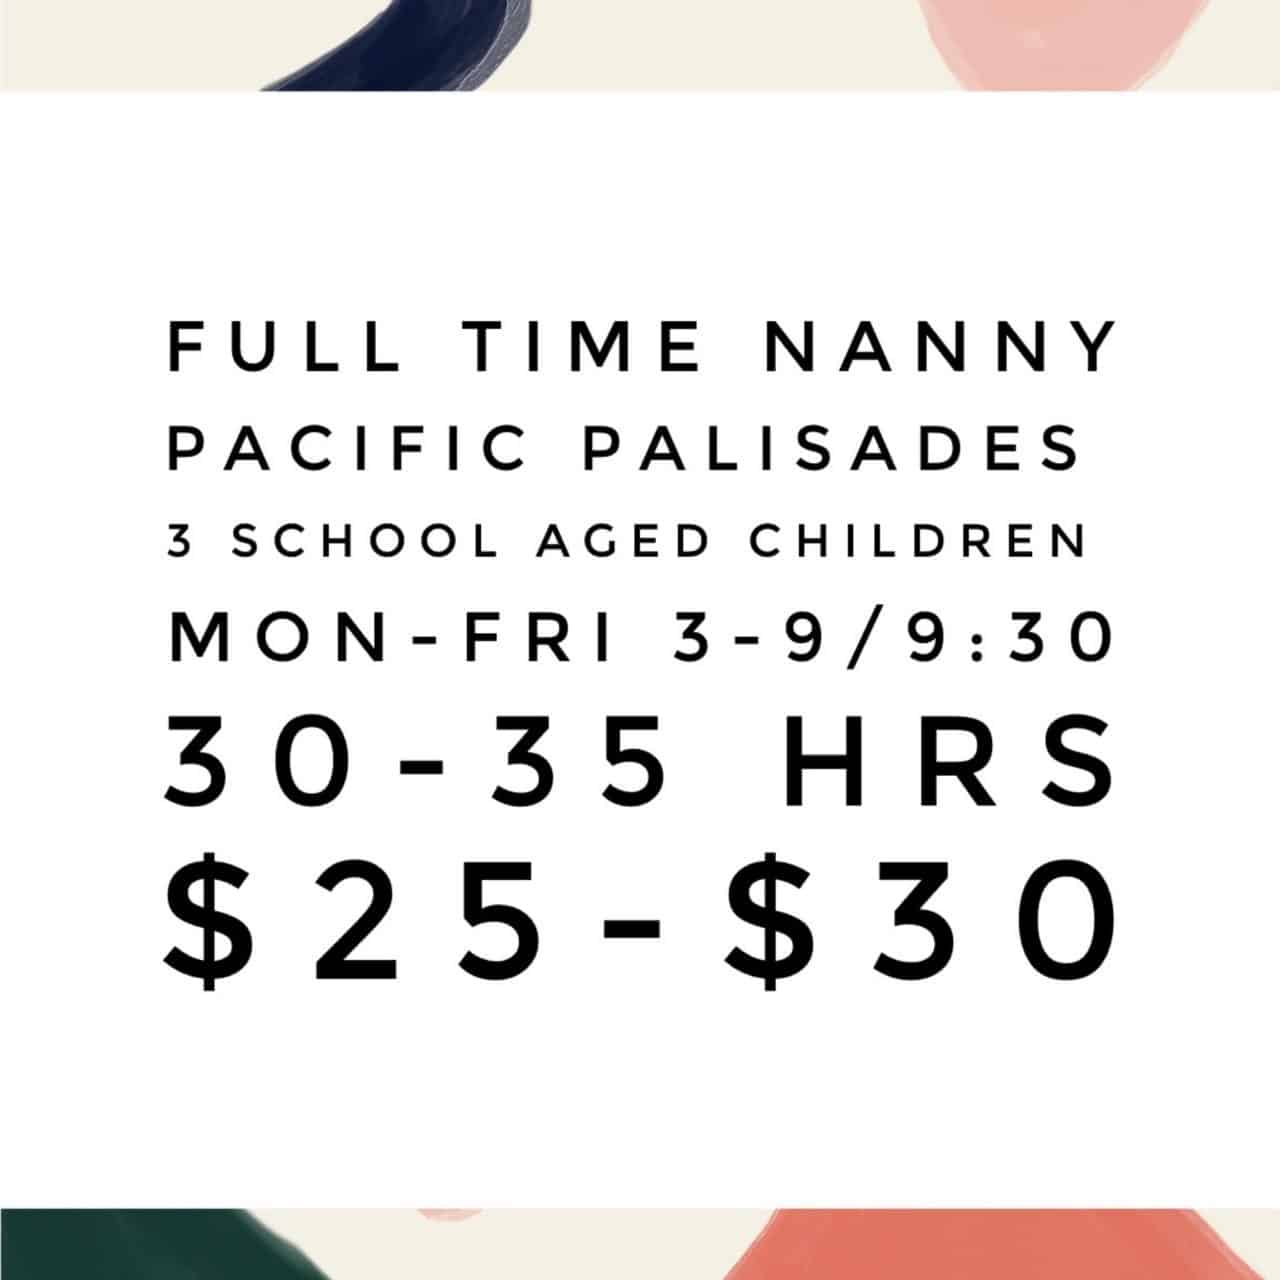 Pacific Palisades Nanny